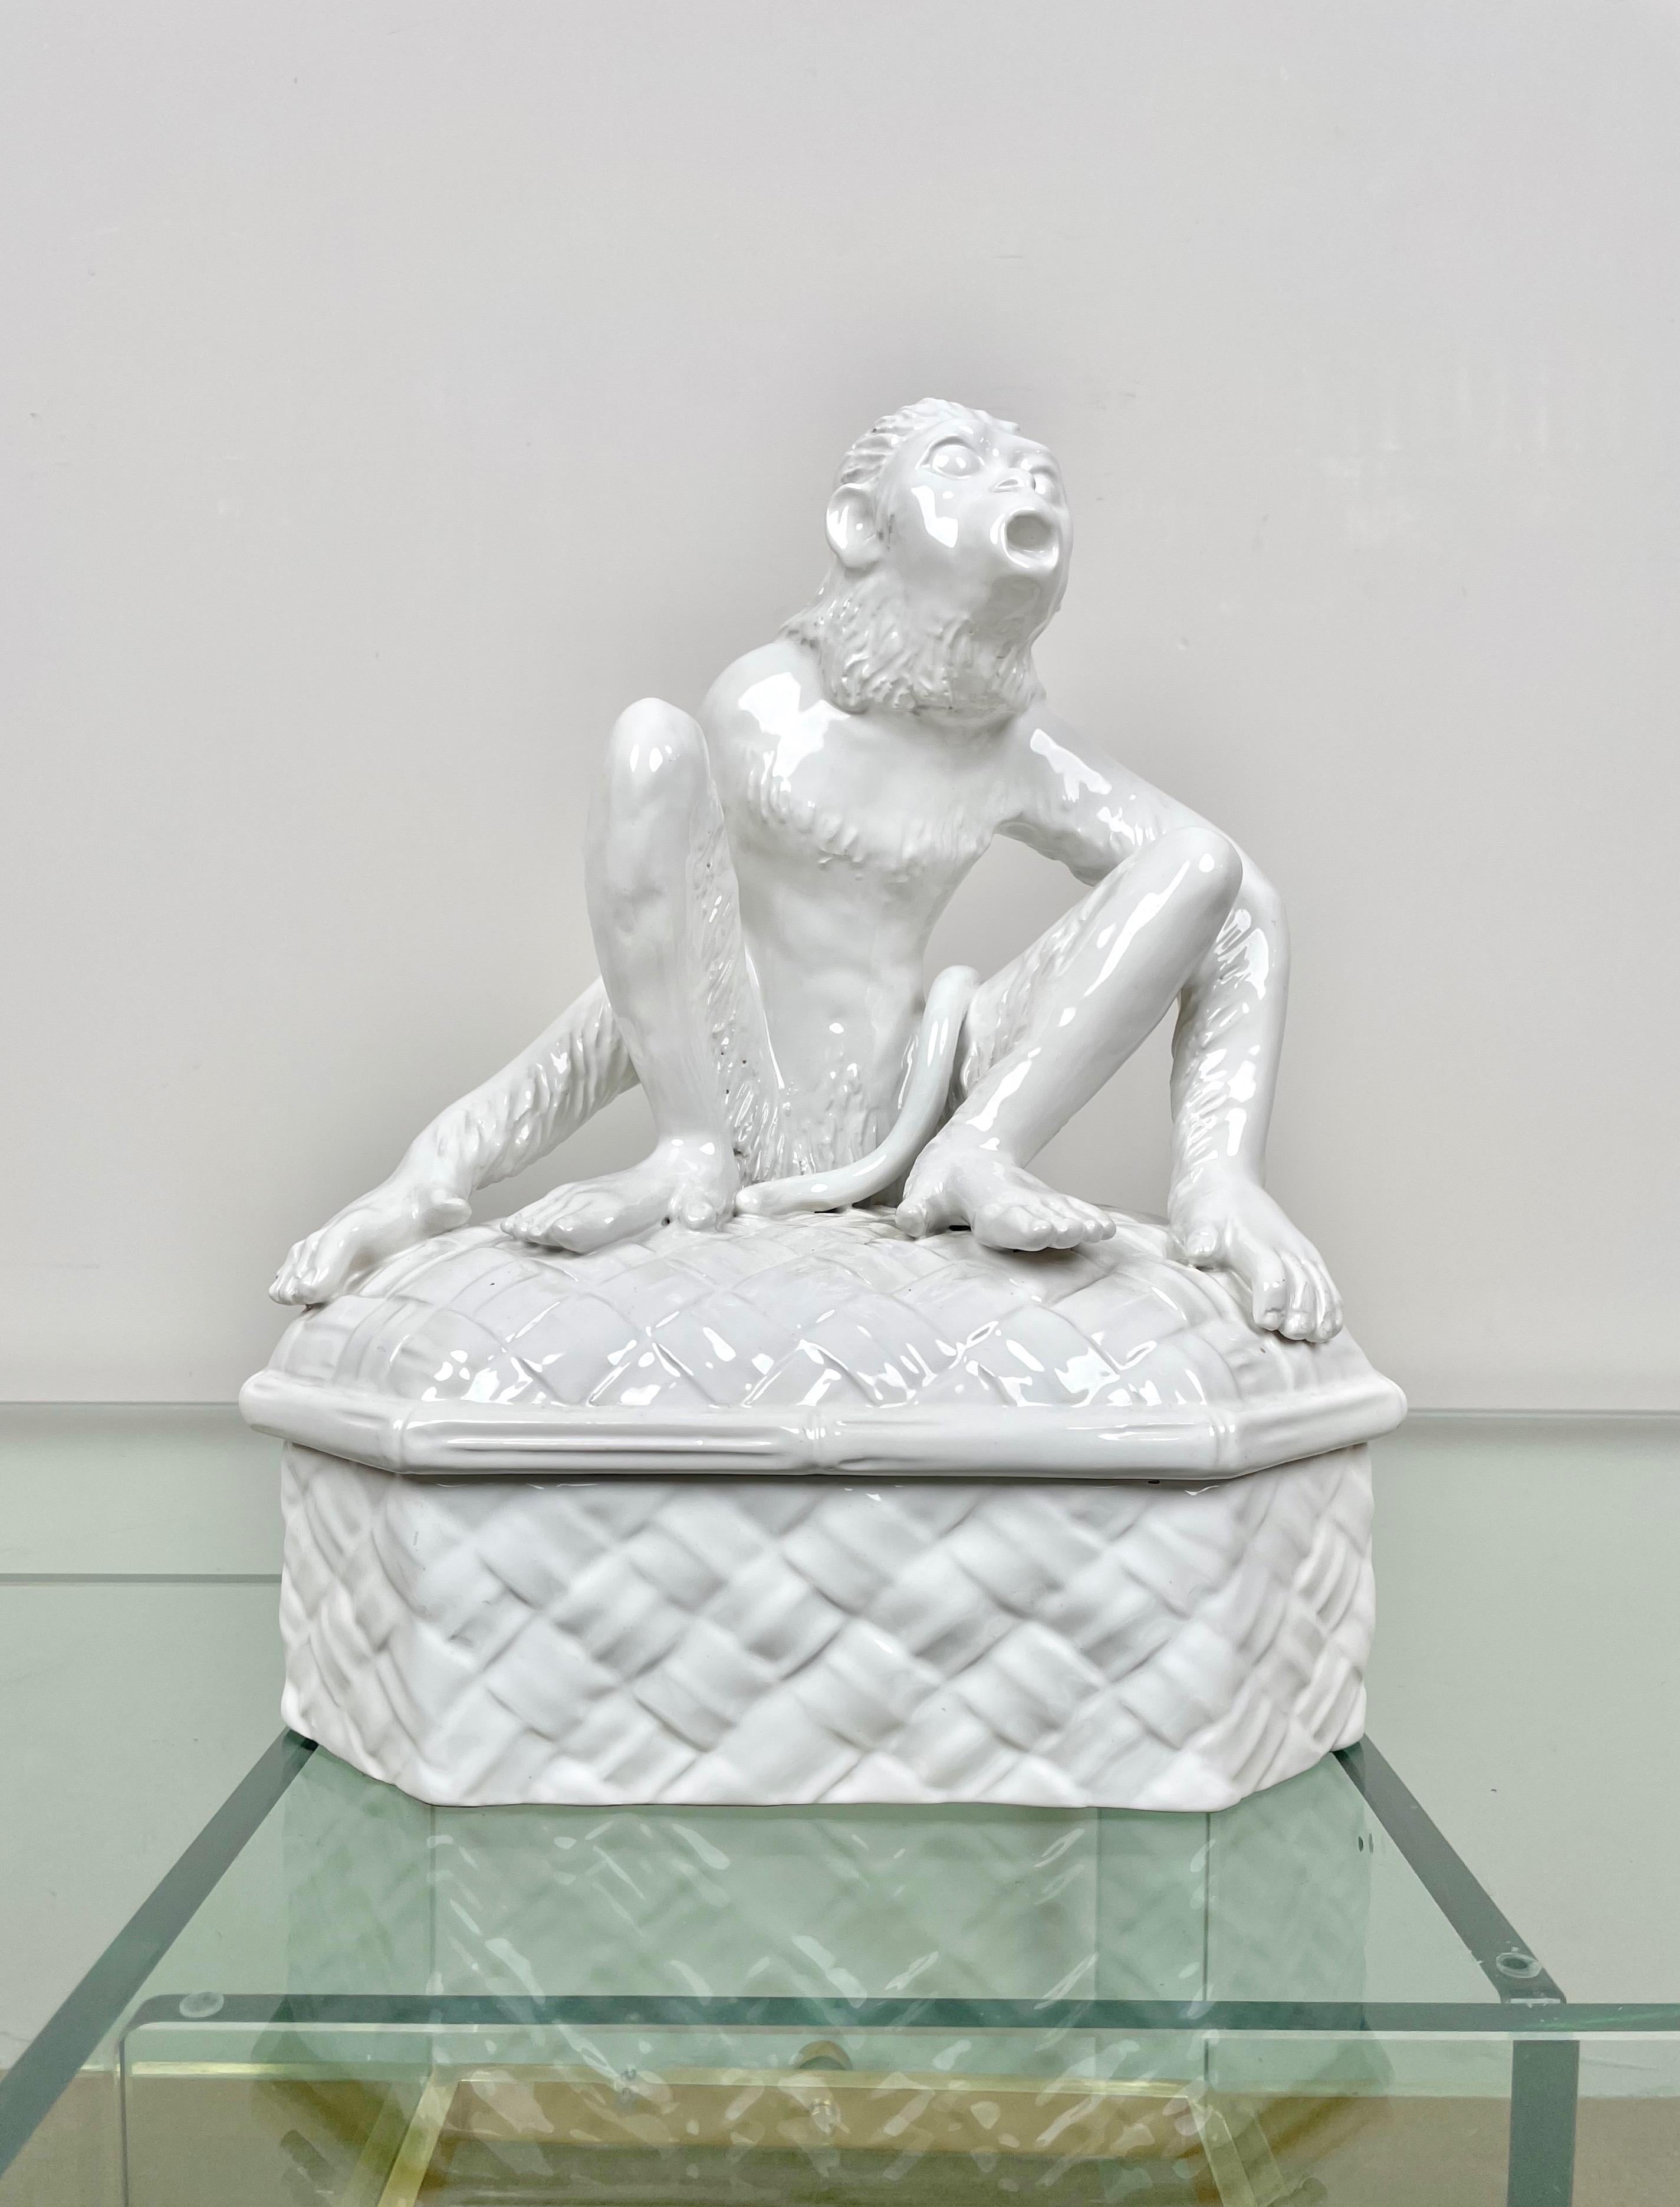 Sculpture animalière en forme de singe dans une boîte en céramique blanche par Vivai del Sud. Fabriqué en Italie dans les années 1970.

Le Label d'origine est encore attaché sur le fond, comme le montrent les photos.